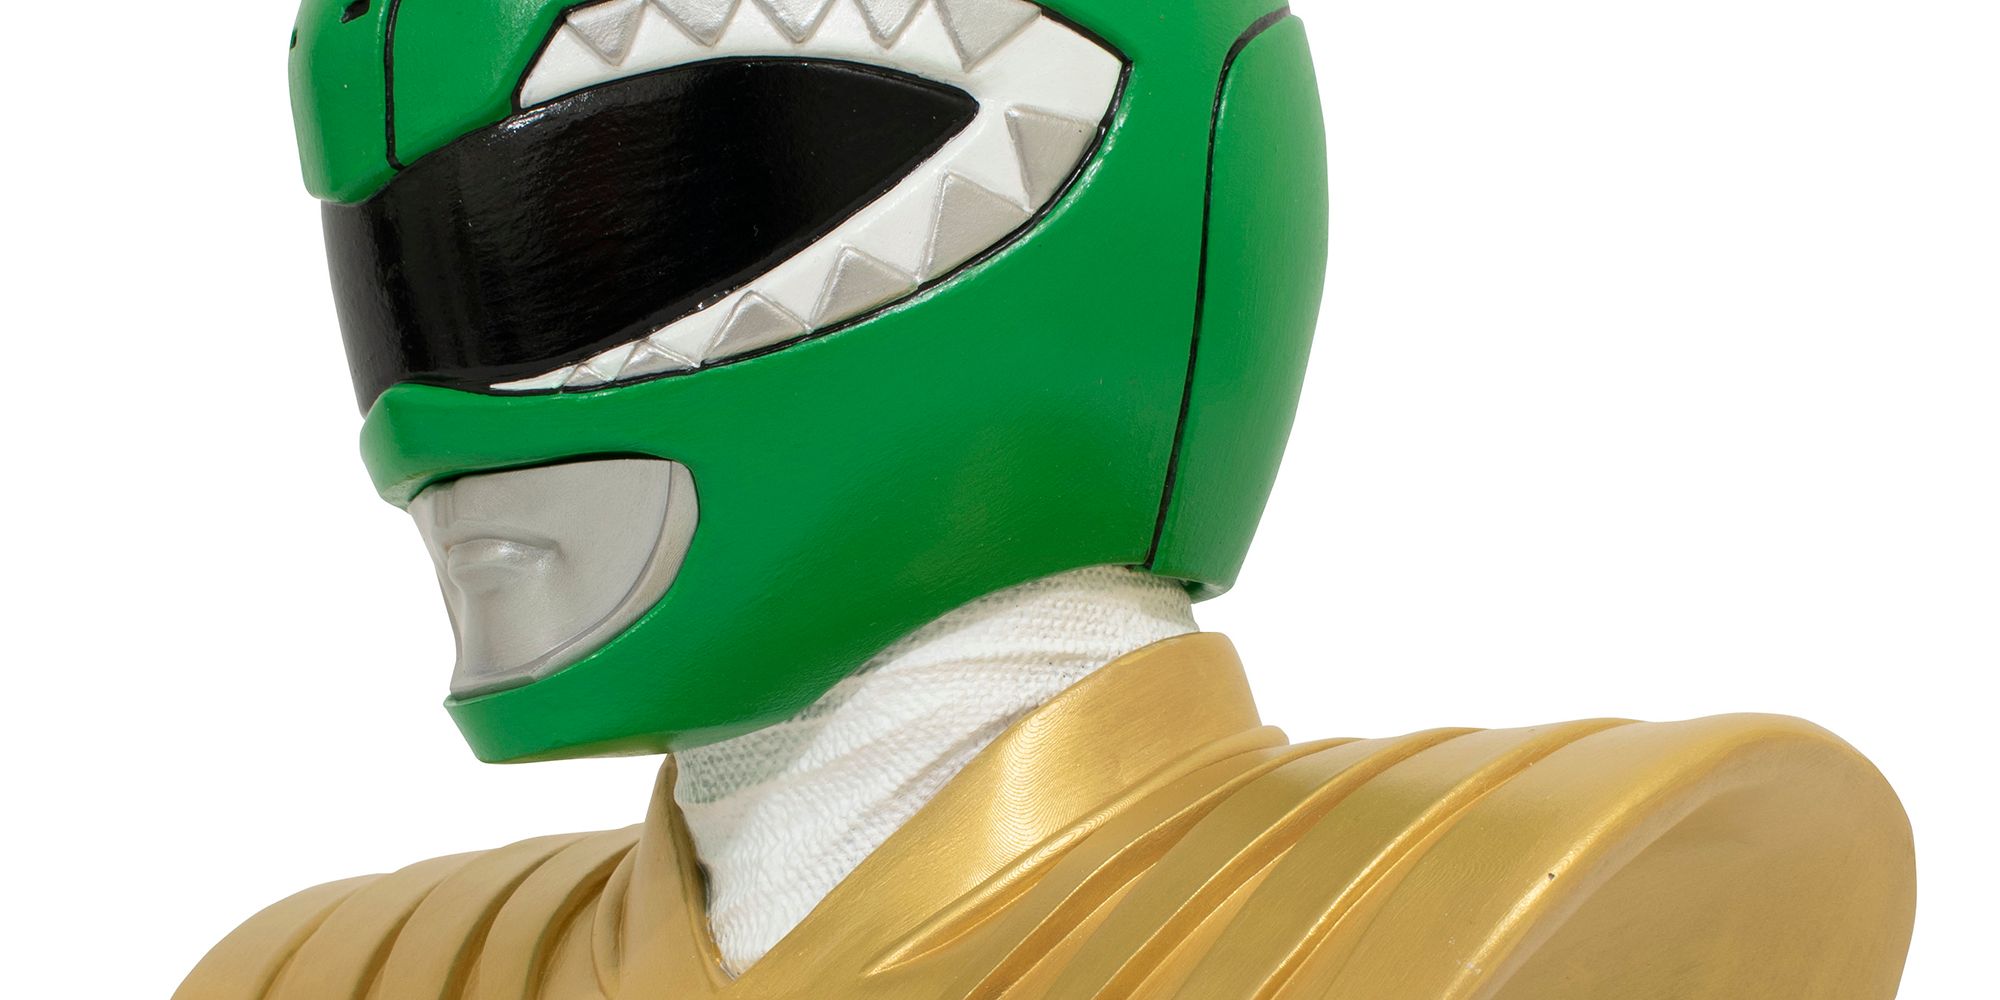 Mighty Morphin Power Rangers Legends Green Ranger Close-up